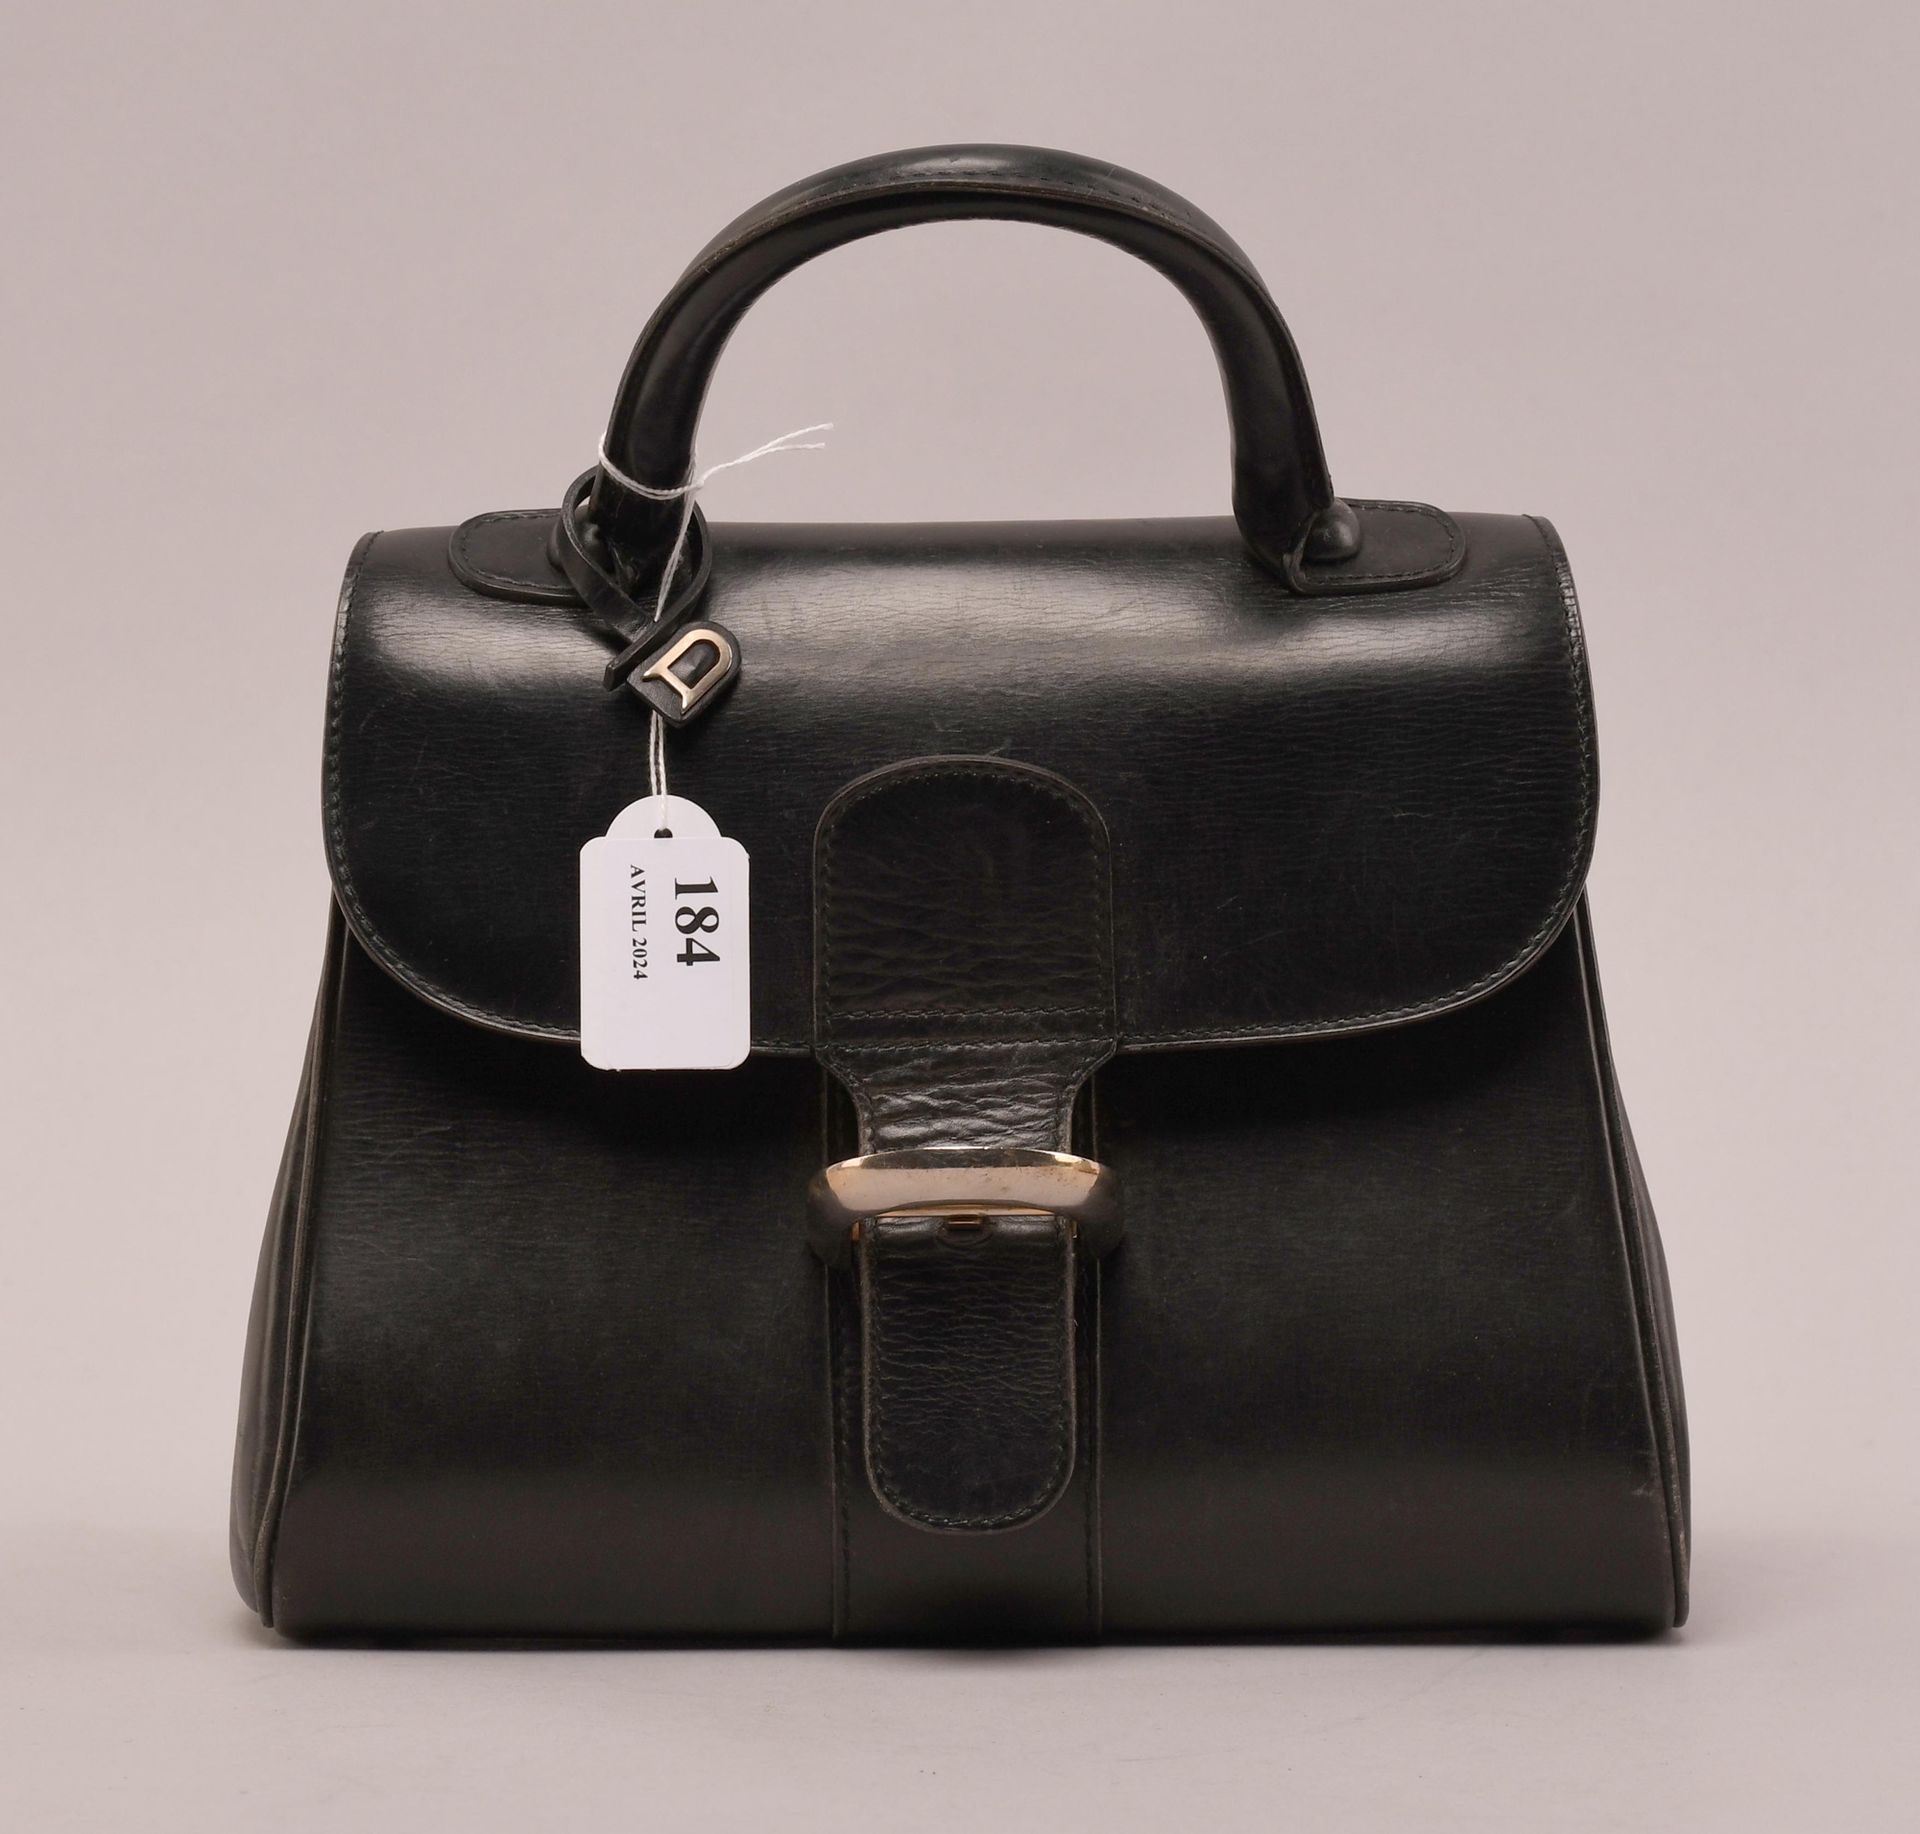 Null Delvaux
Sac vintage porté main en cuir noir. Modèle moyen “Brillant”.